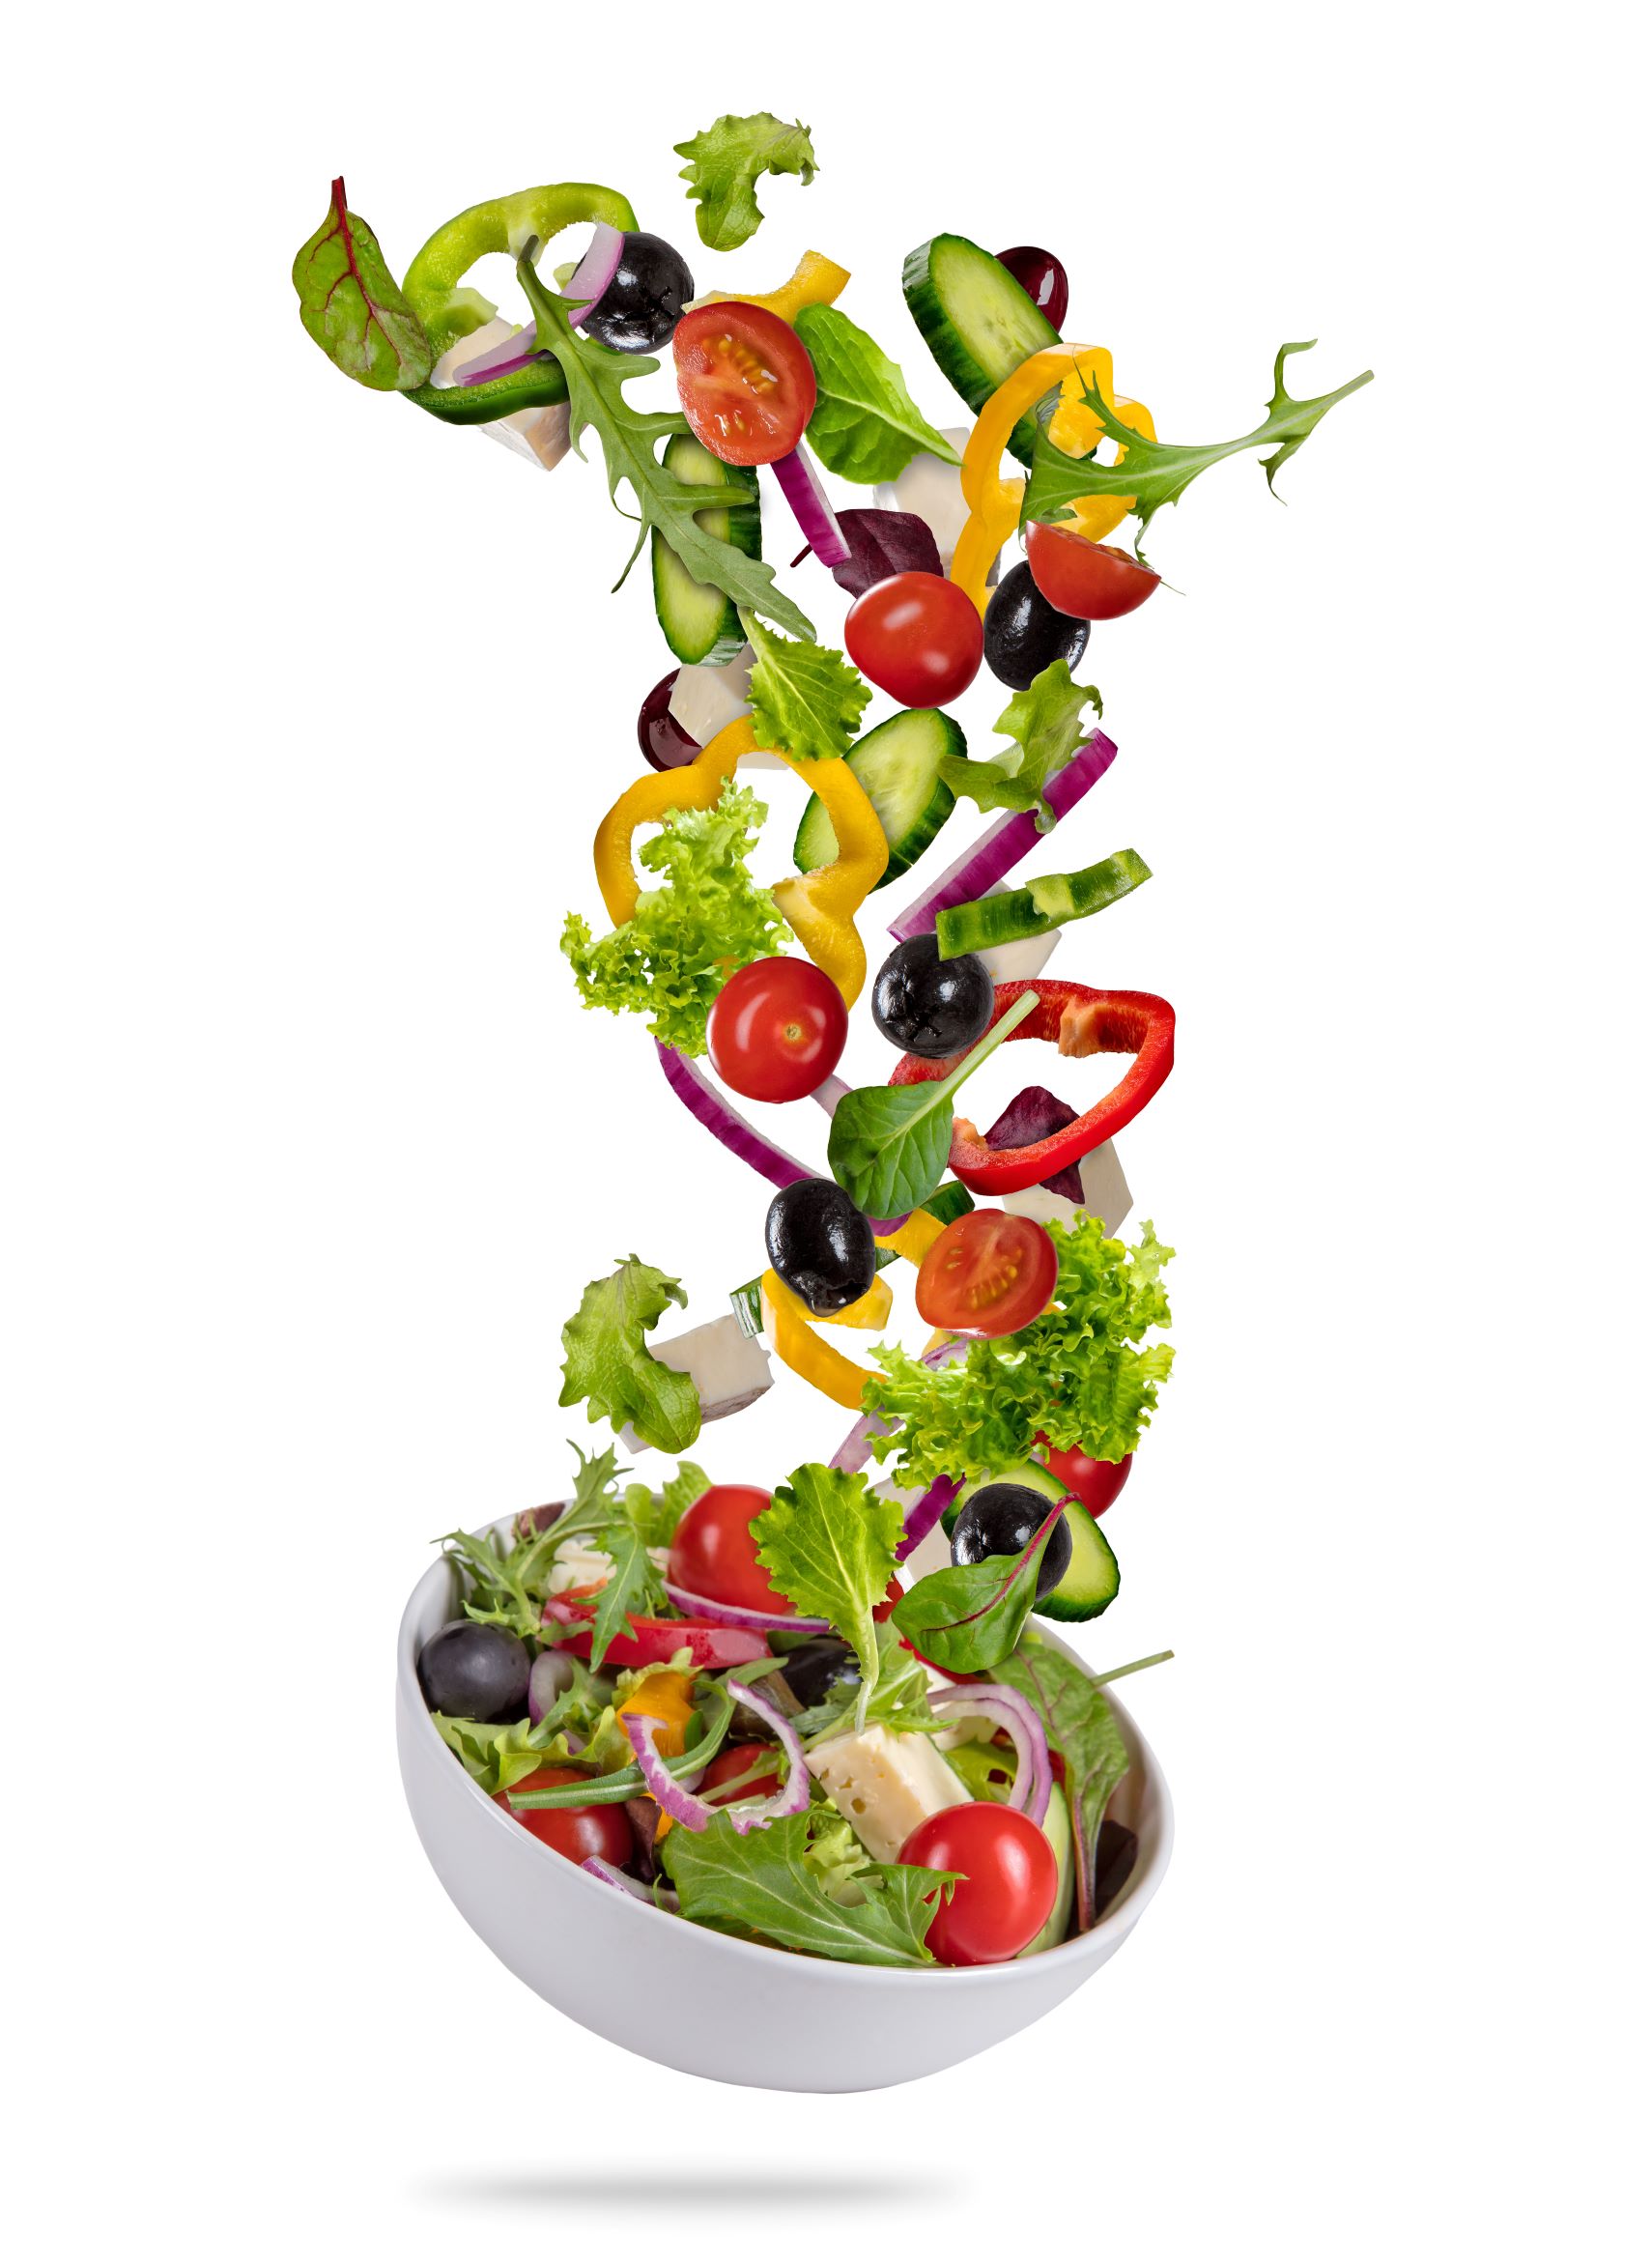 Ernährung als Basis für gesunde Knochen: Bunter Salat in weißer Schüssel